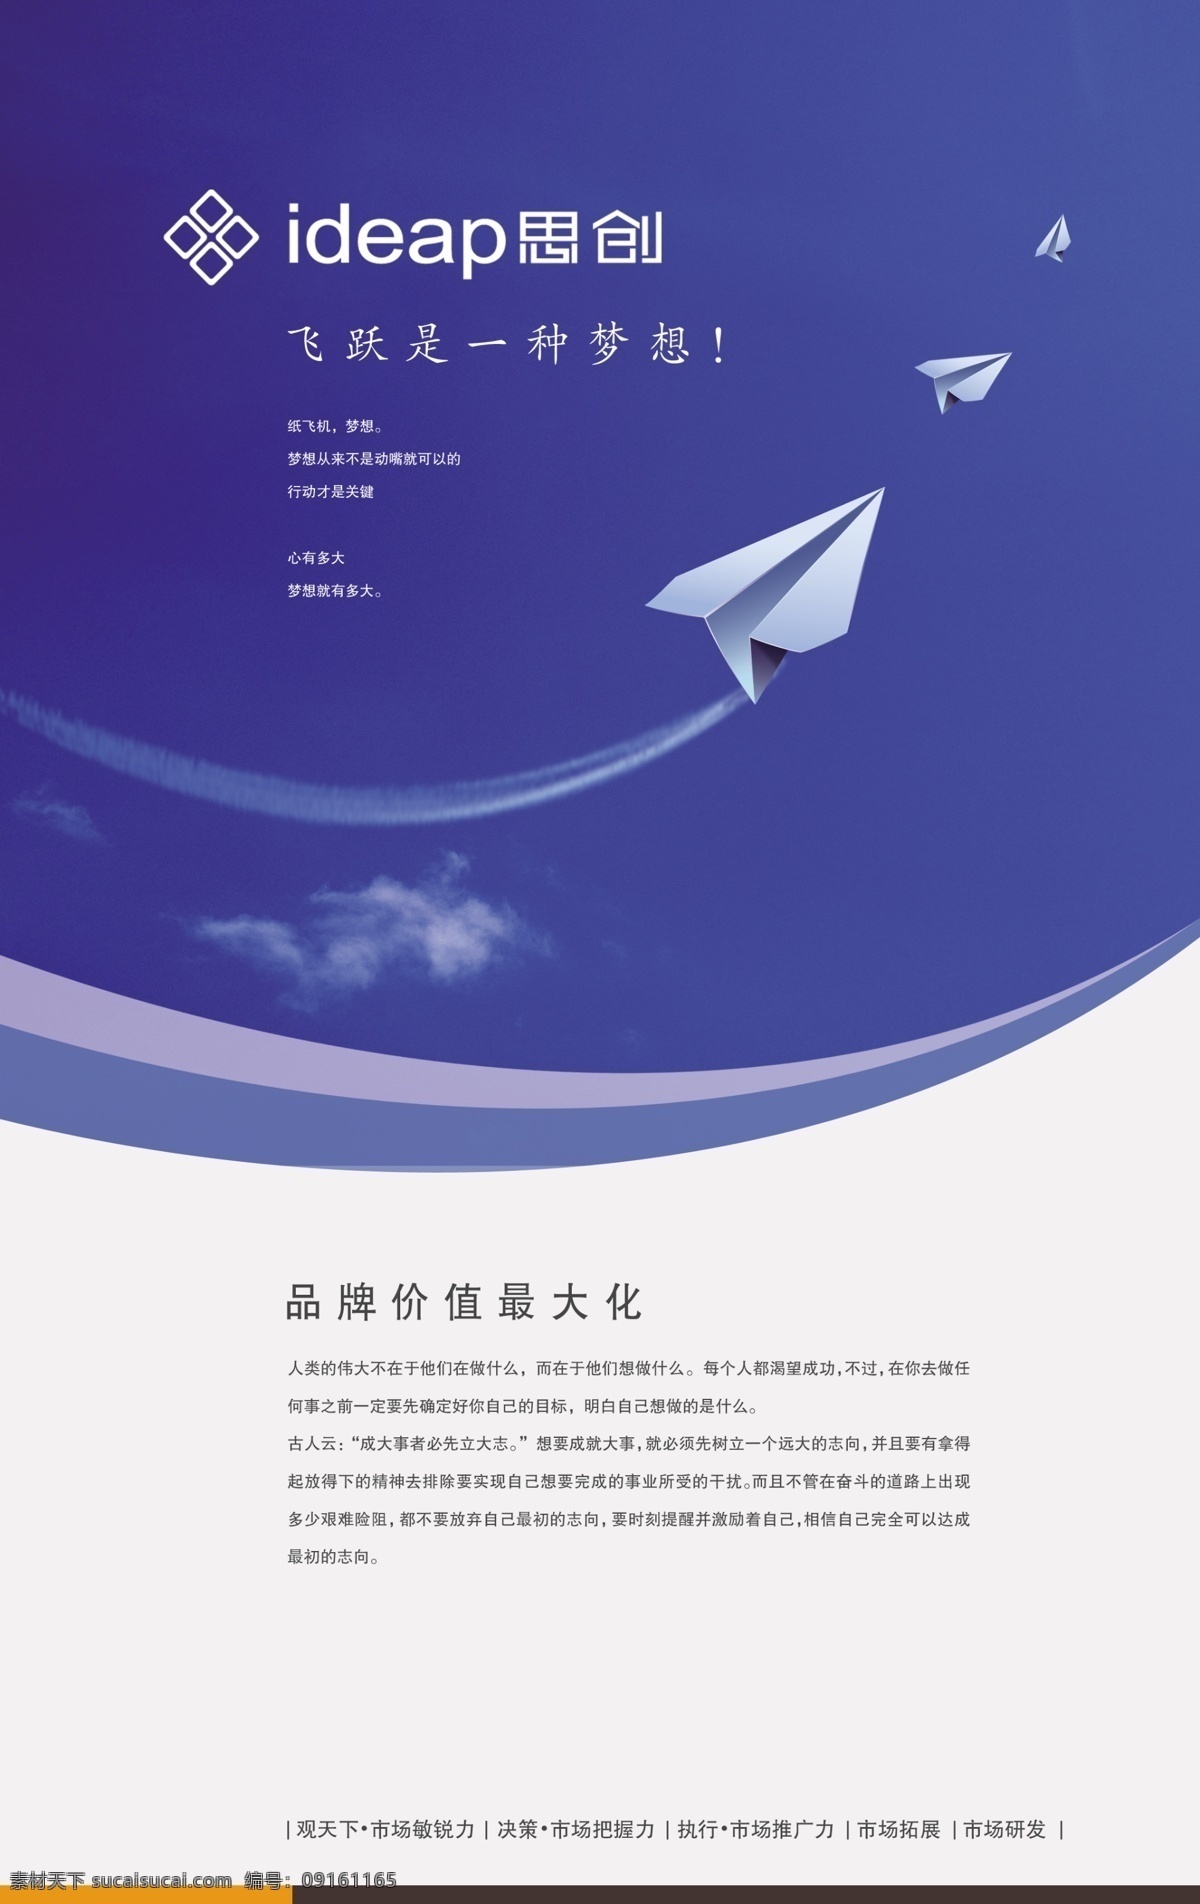 白云 飞机 广告设计模板 价值 蓝天 品牌 源文件 飞跃 种 梦想 模板下载 其他海报设计